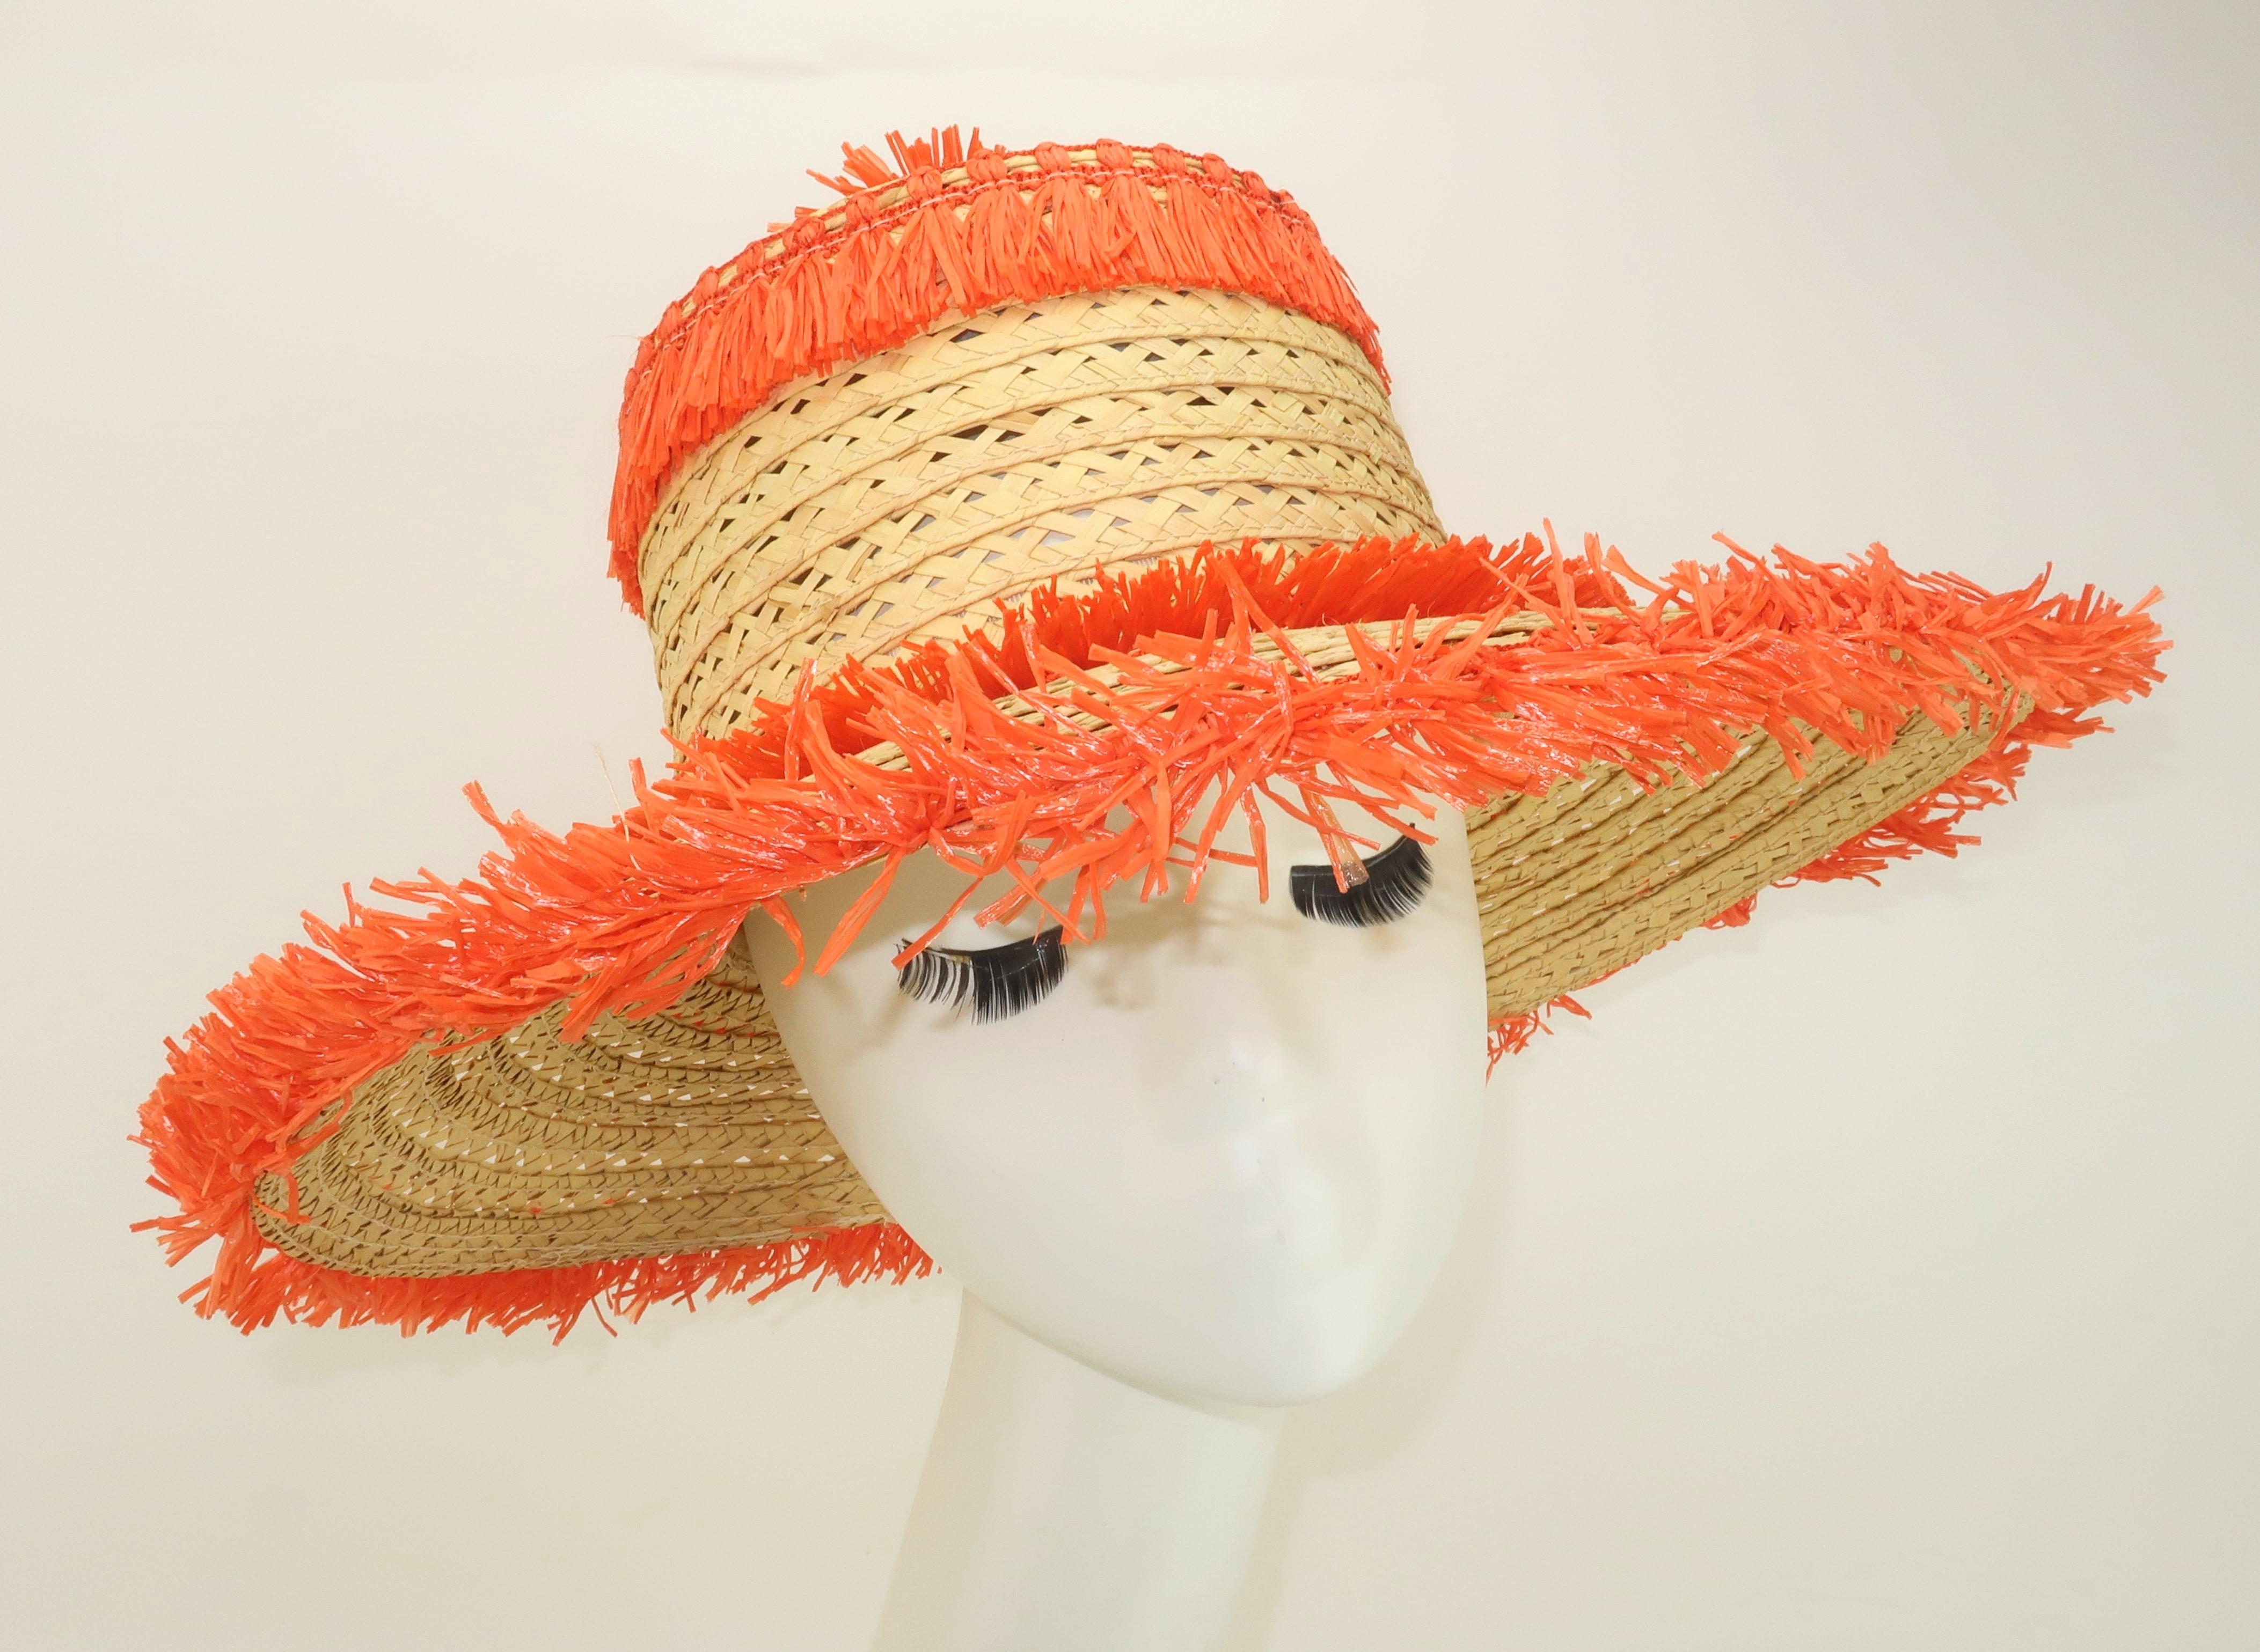 Es ist Zeit für ein bisschen Spaß in der Sonne! Italienischer Strohhut aus den 1960er Jahren mit breiter Krempe und skurriler, orangefarbener Bastdekoration, einschließlich einer Blumenbommel am oberen Ende der Krone. Das offene Geflecht des Strohs